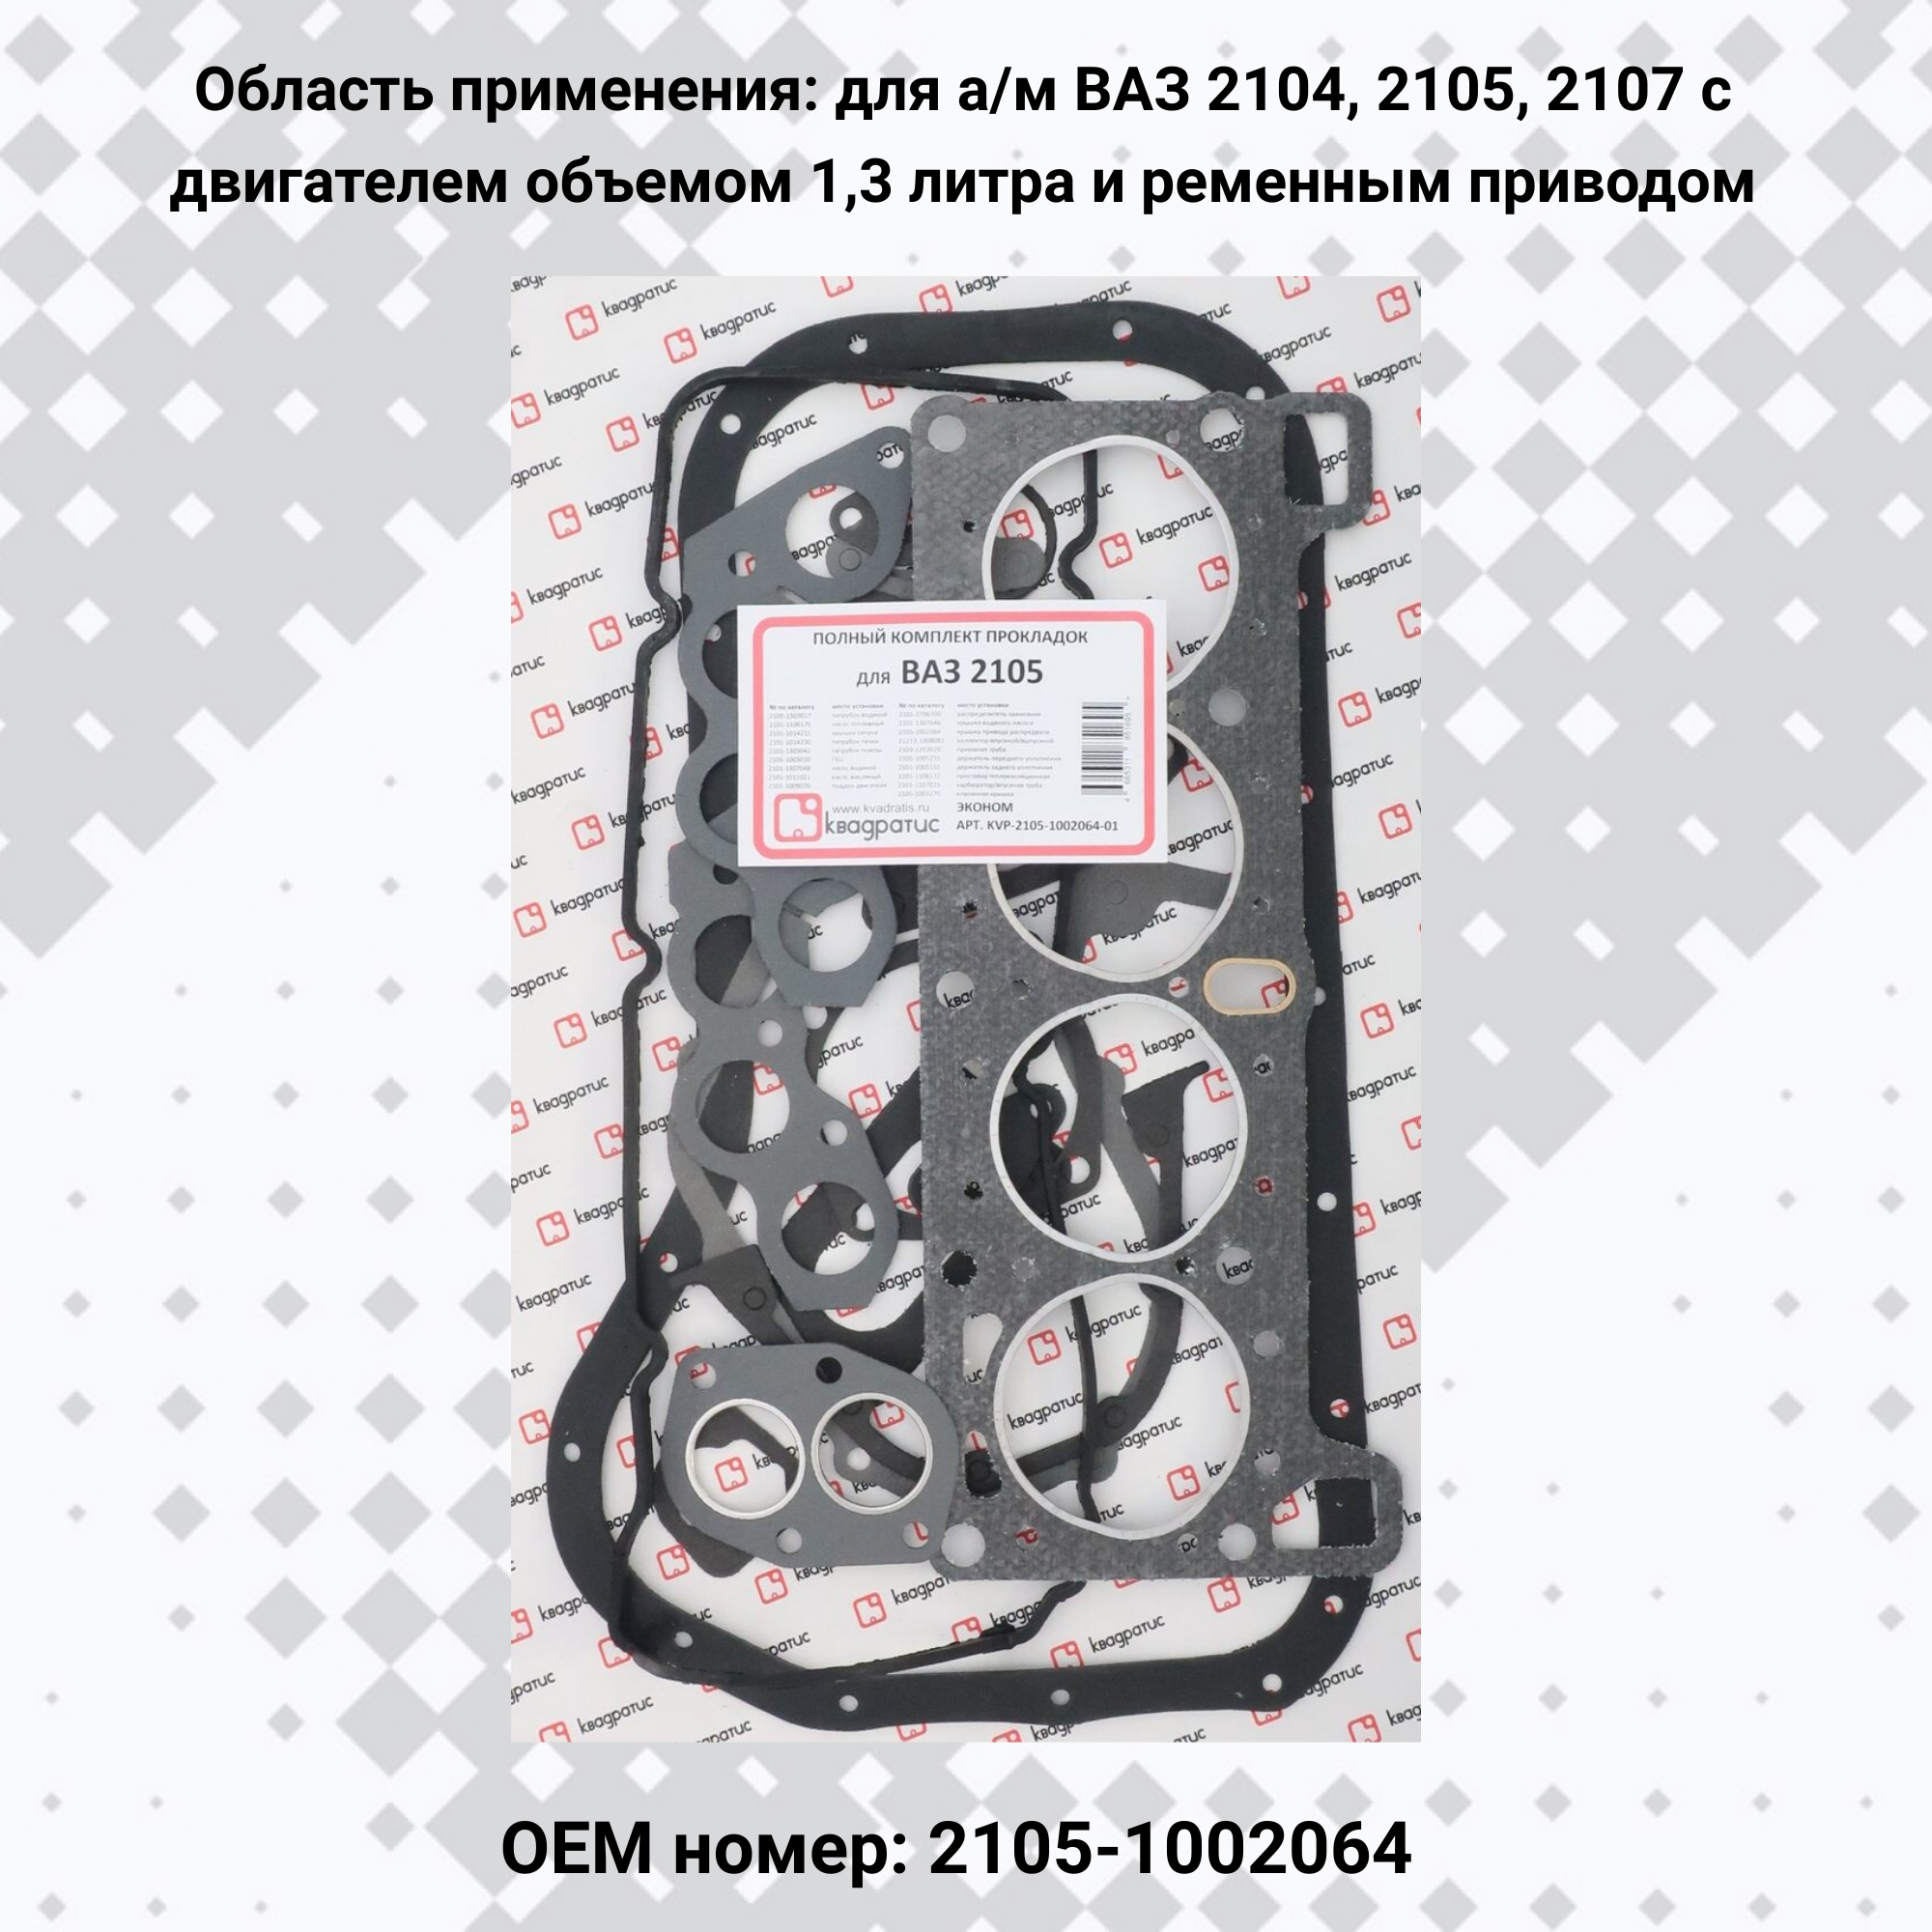 Полный комплект прокладок для ВАЗ 2105 Эконом (квадратис)